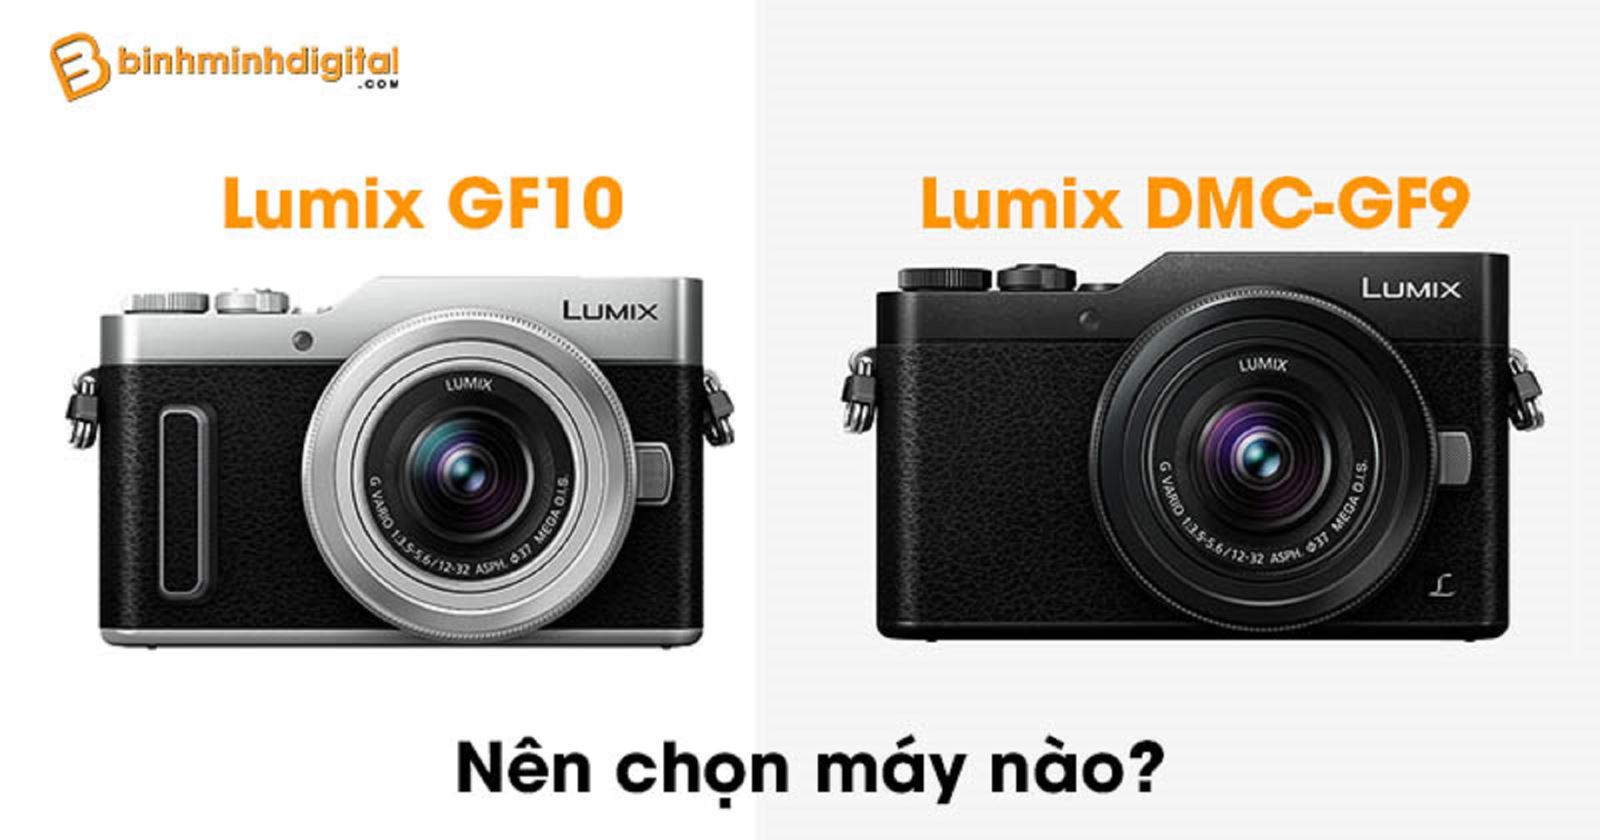 Panasonic Lumix GF10 và Panasonic Lumix DMC-GF9 nên chọn máy nào?